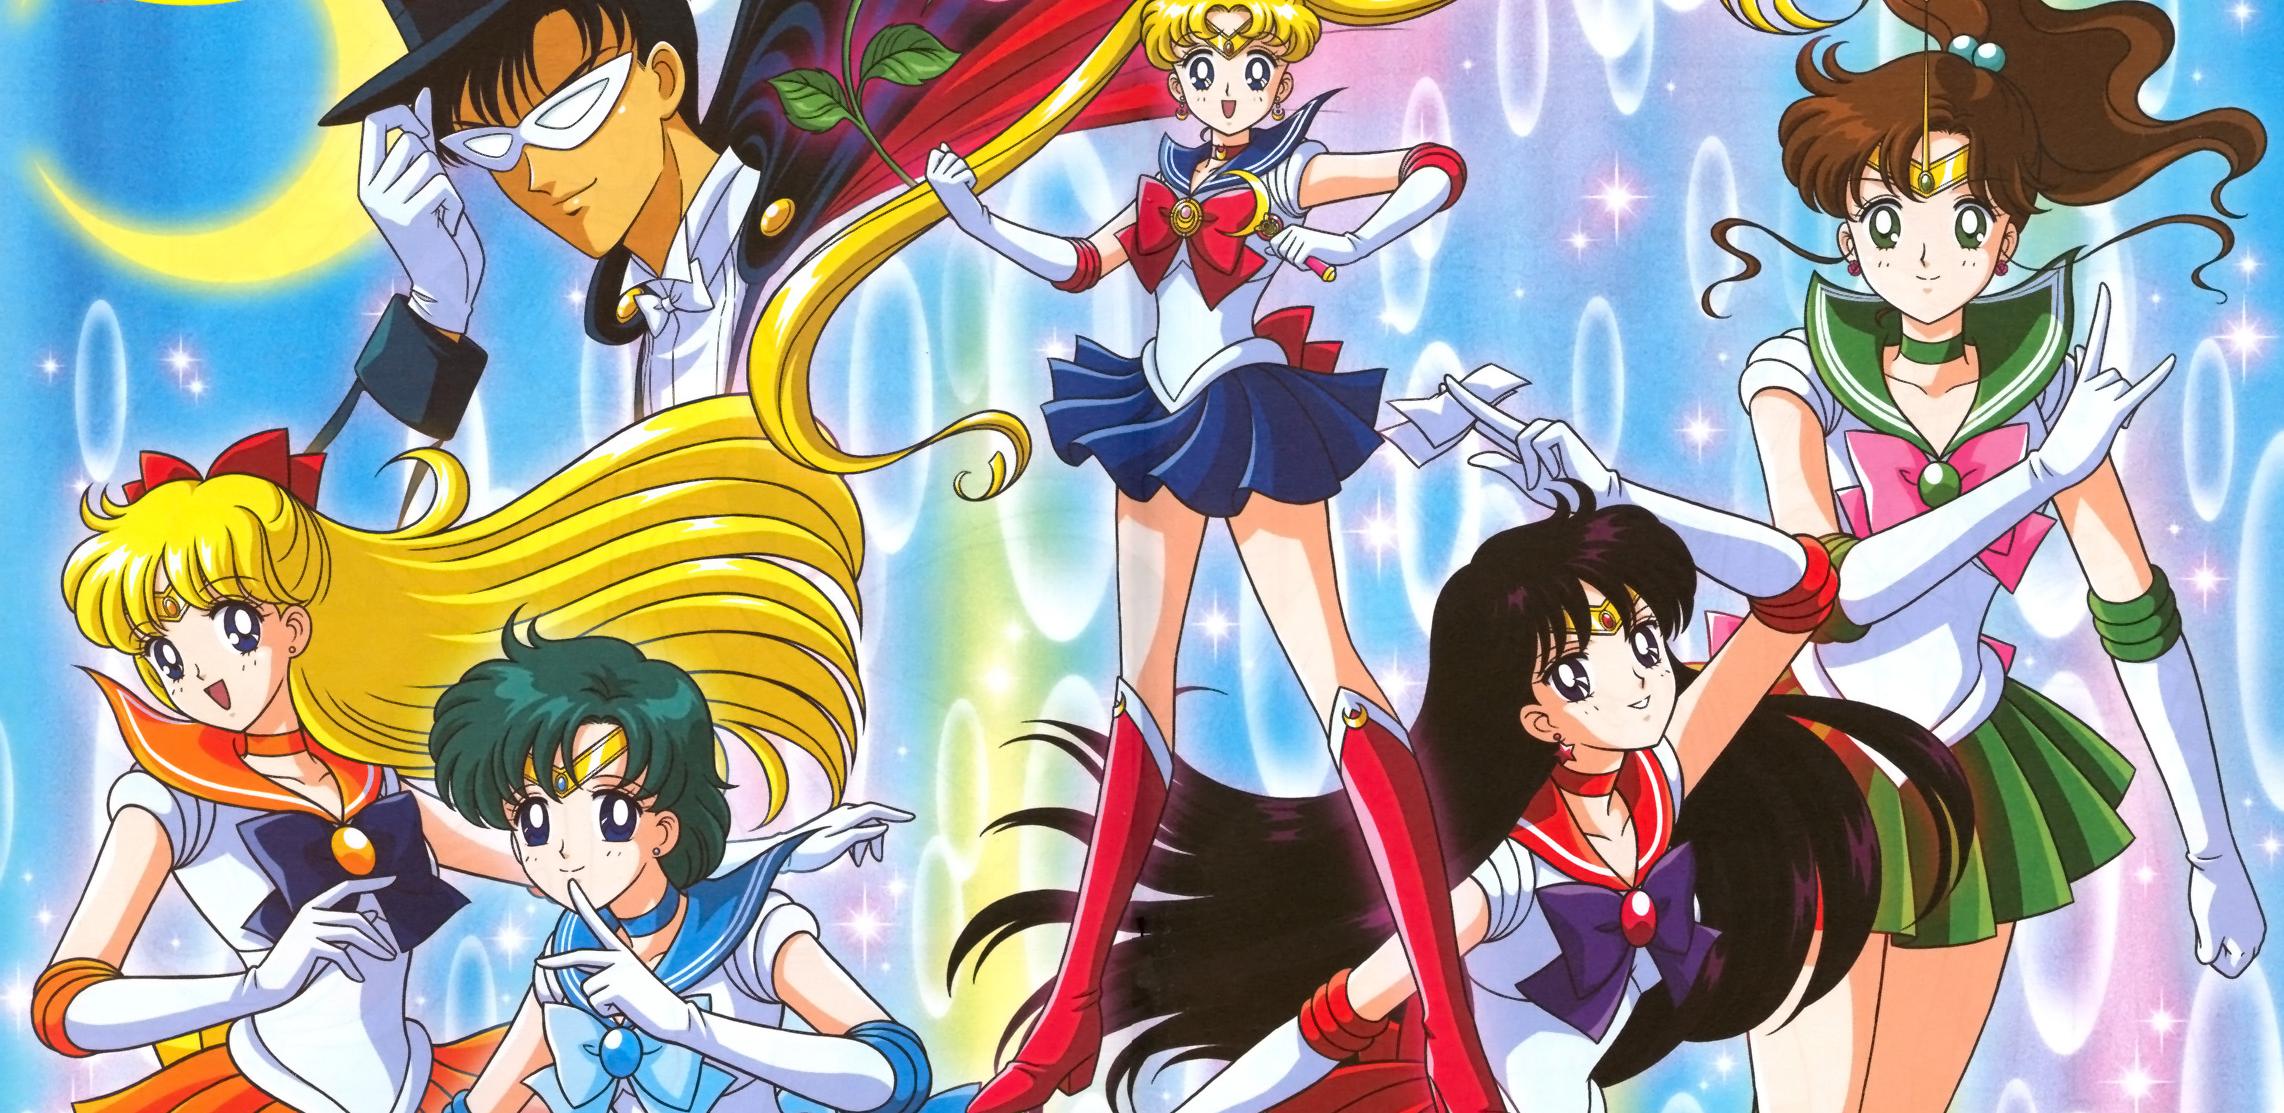 Xem phim Bishoujo Senshi Sailor Moon (Ss1) - Sailor Moon 1 | Thủy Thủ Mặt Trăng Phần 1 Vietsub